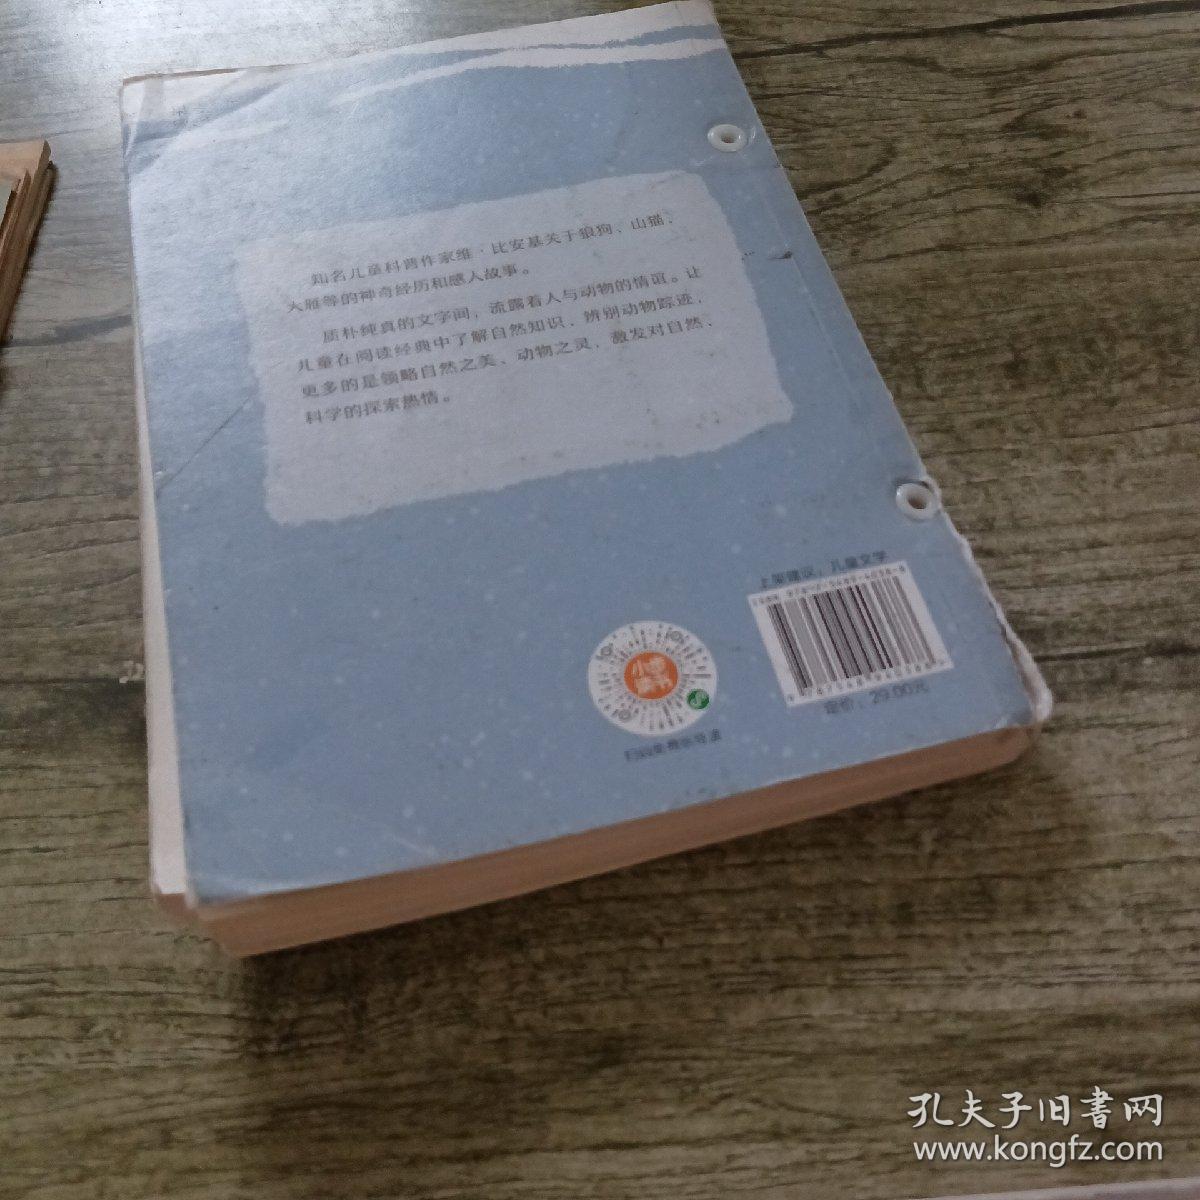 中文分级阅读K5  雪地寻踪  （世界经典儿童文学作品，10-11岁适读，名师导读免费听；小学五年级课外阅读）